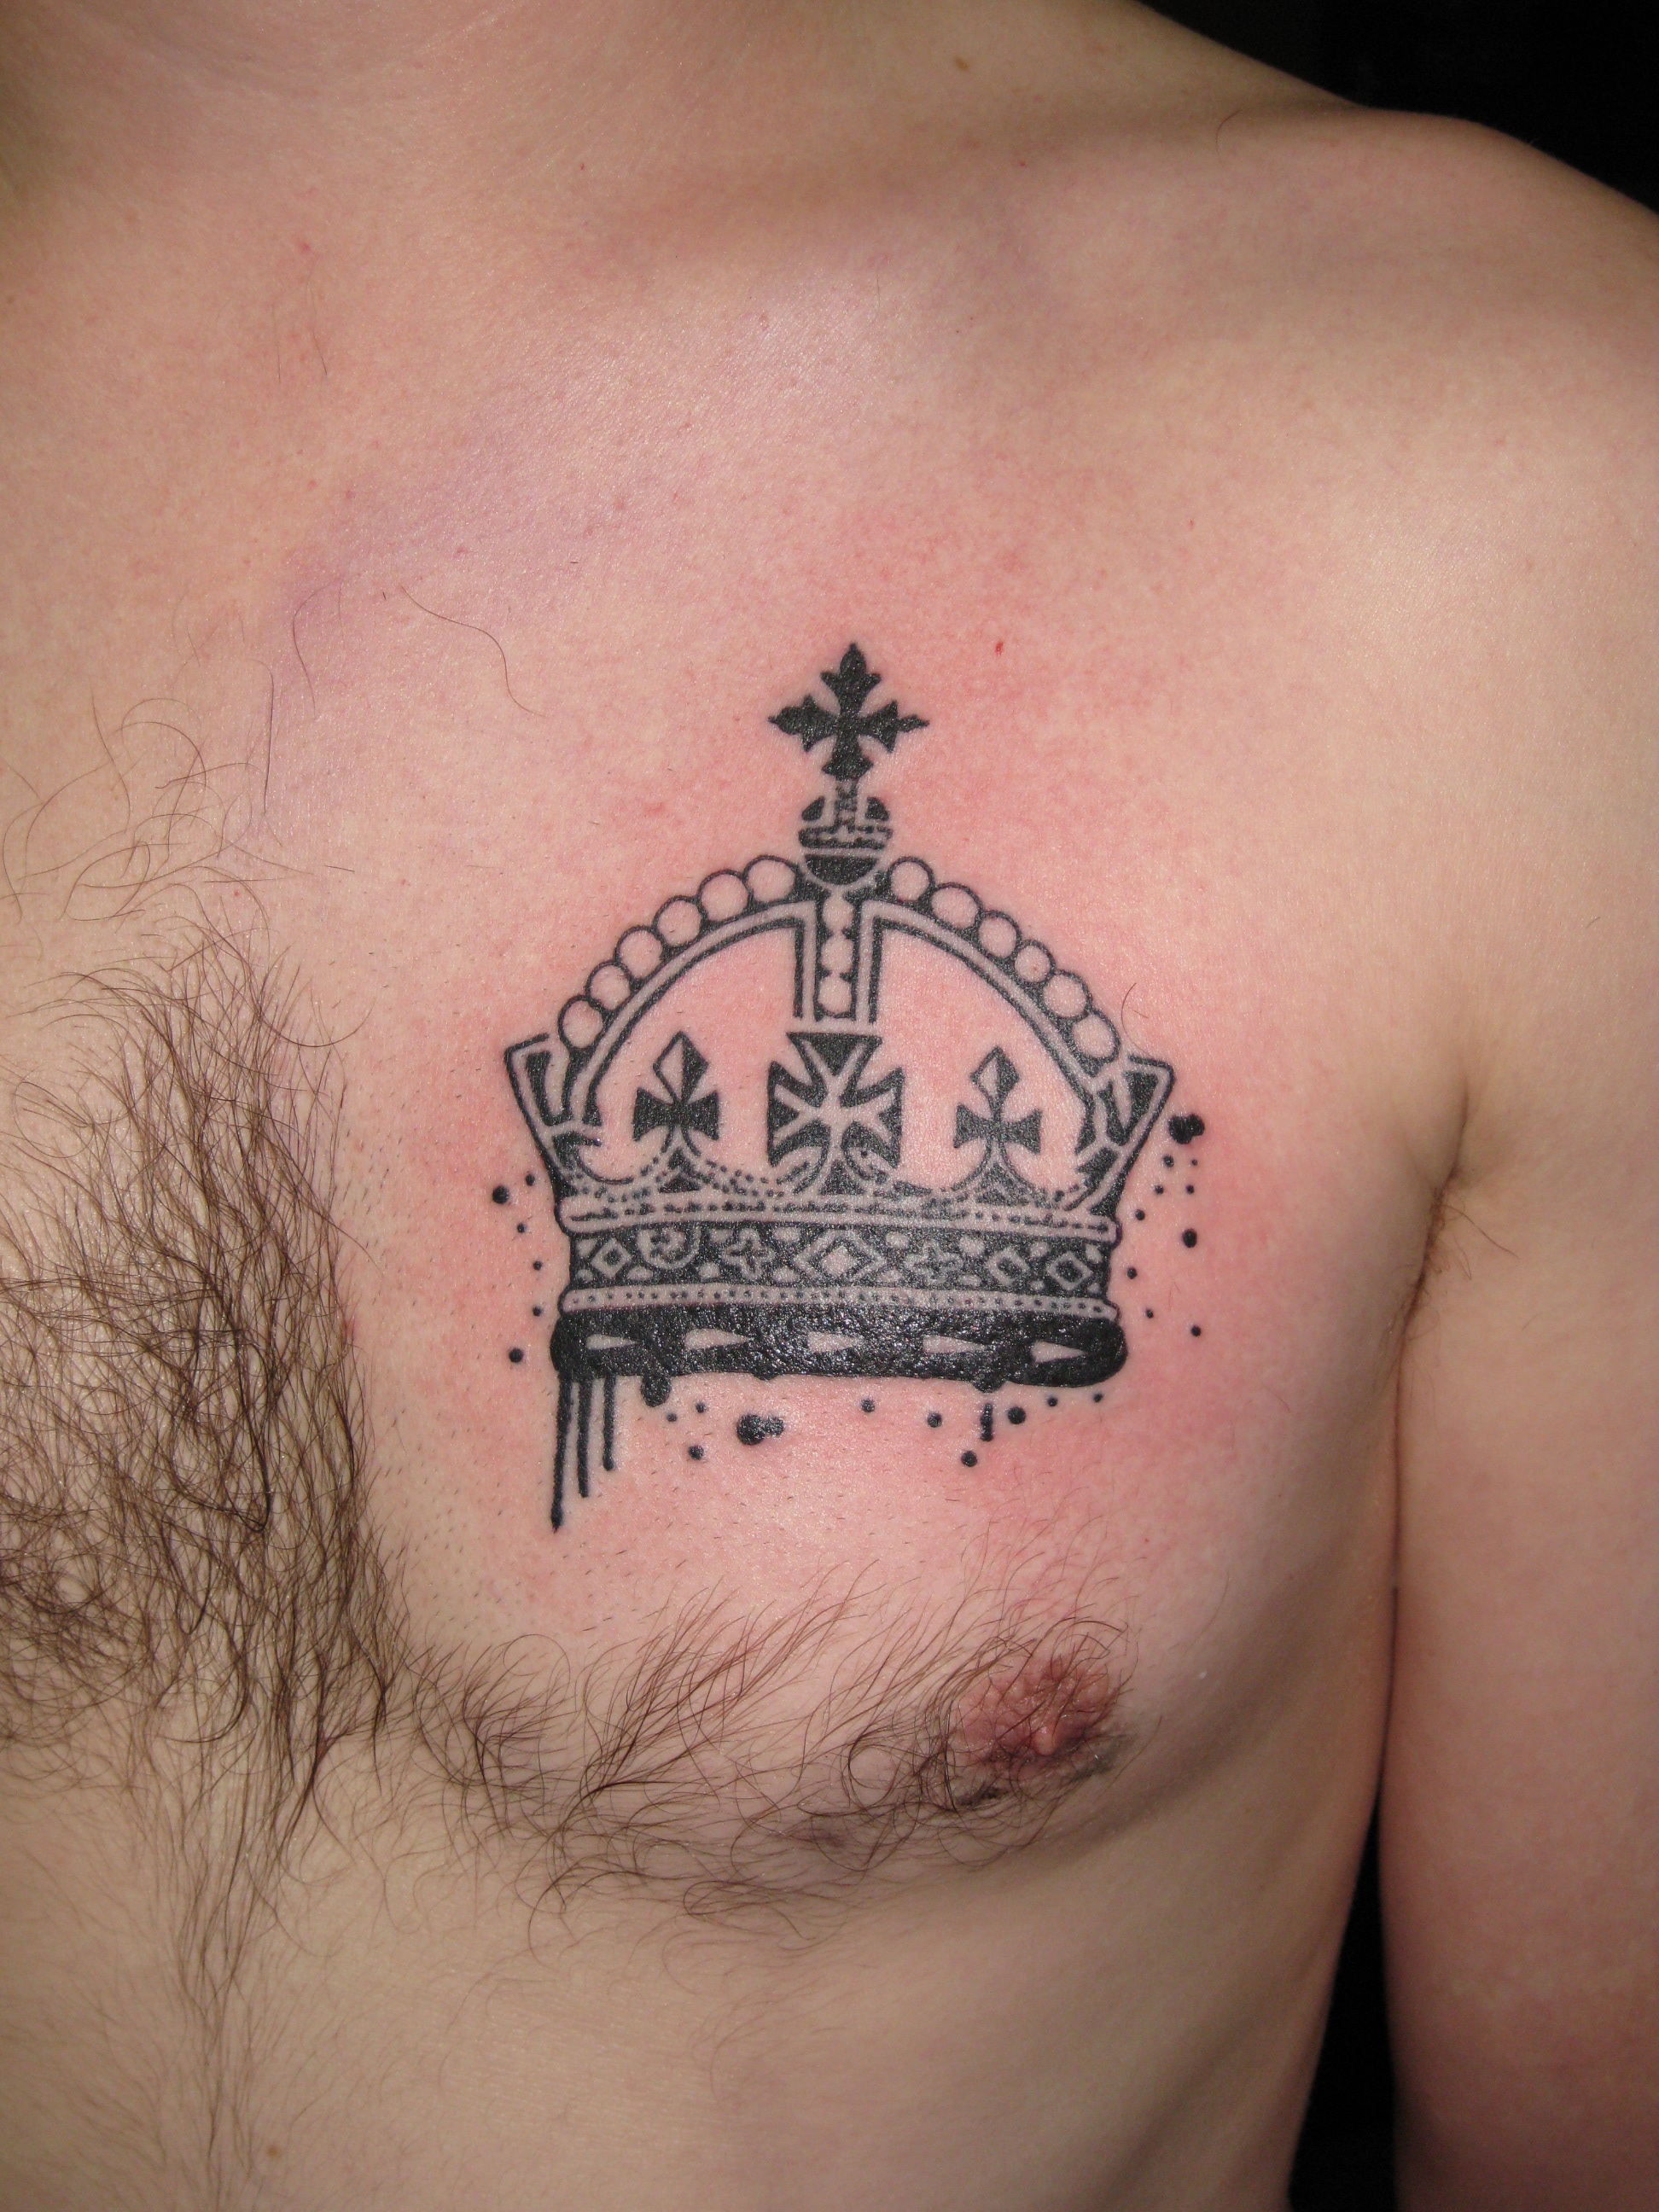 Graffiti crown tattoo